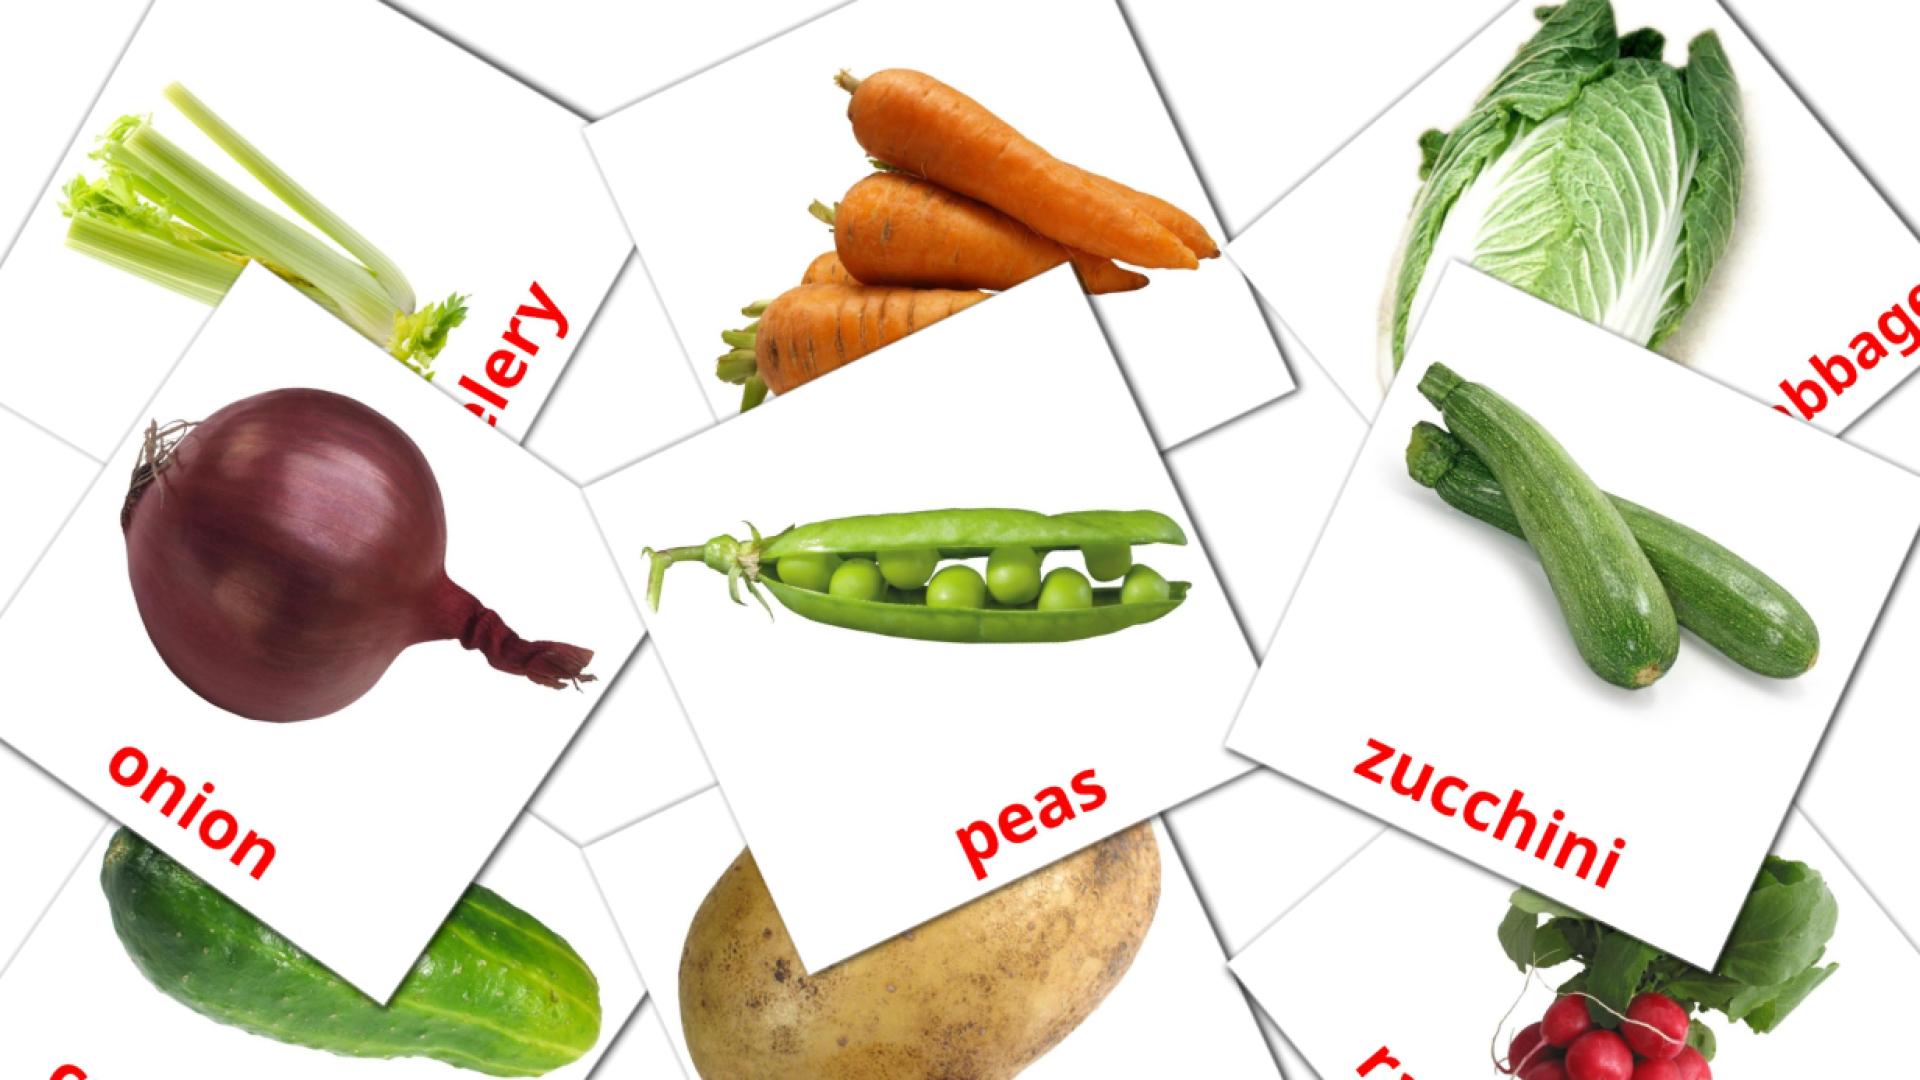 29 Vegetables flashcards